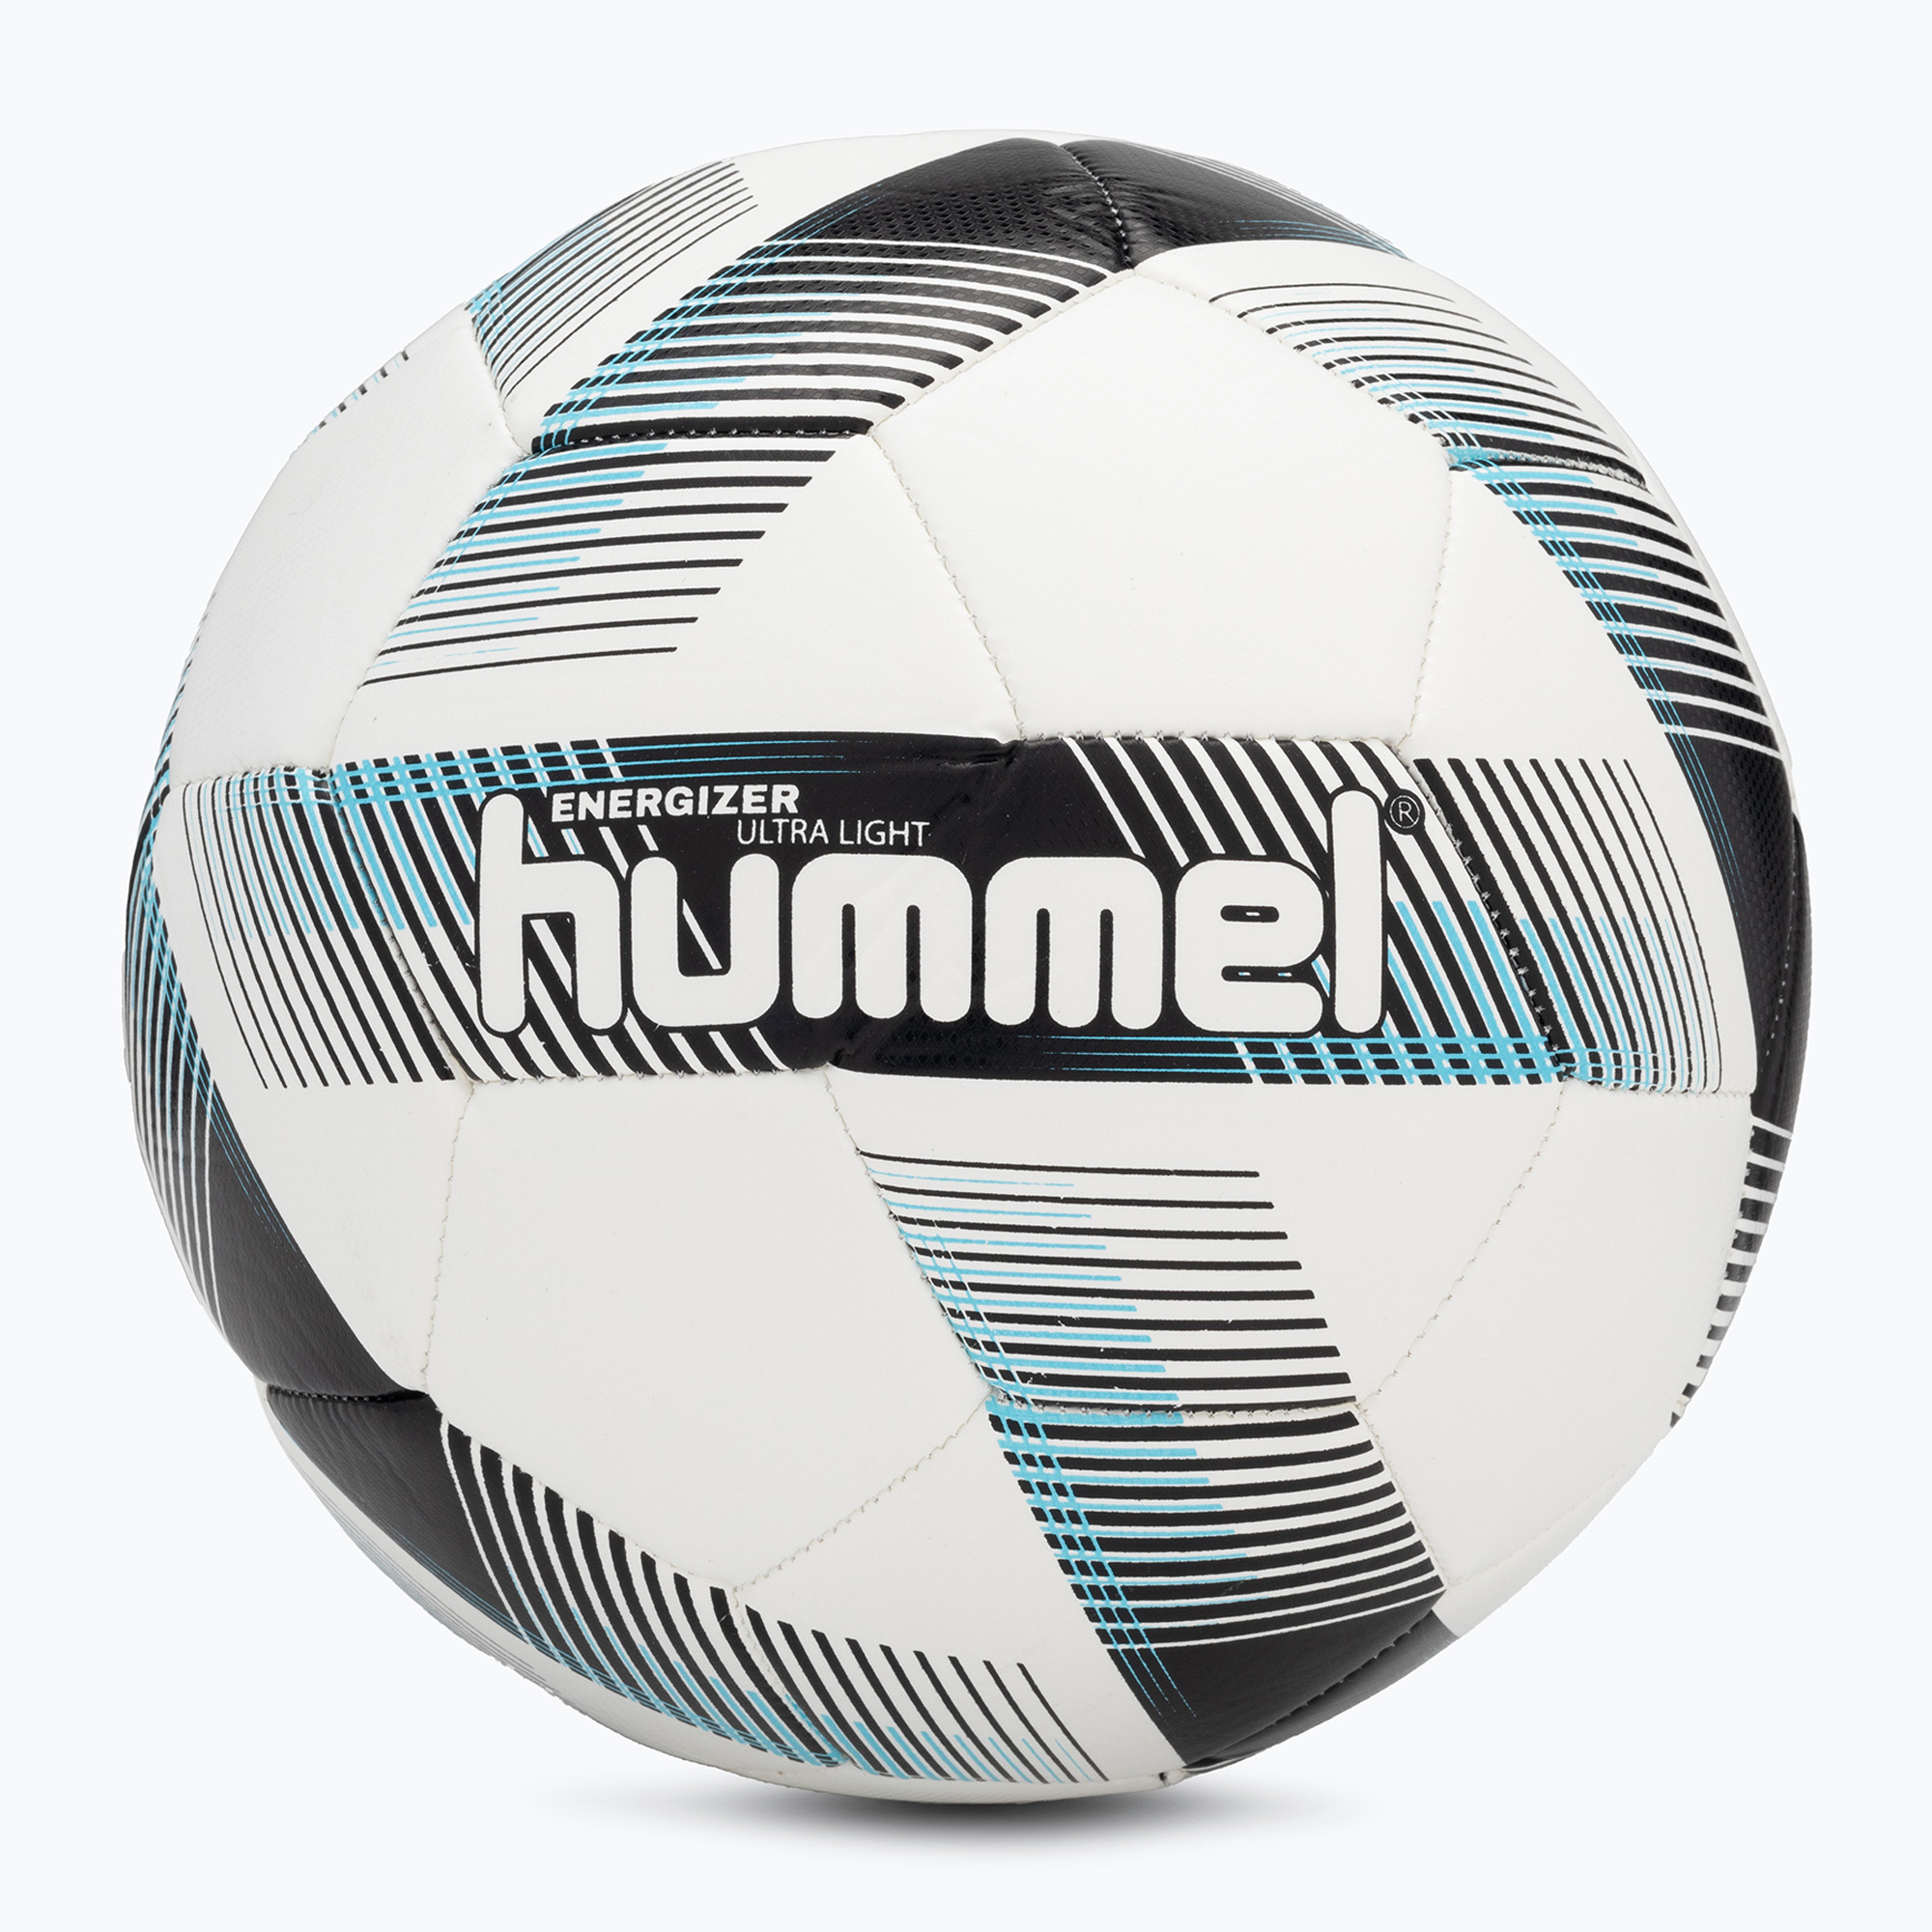 Hummel Energizer Ultra Light FB futbalová lopta biela/čierna/modrá veľkosť 5